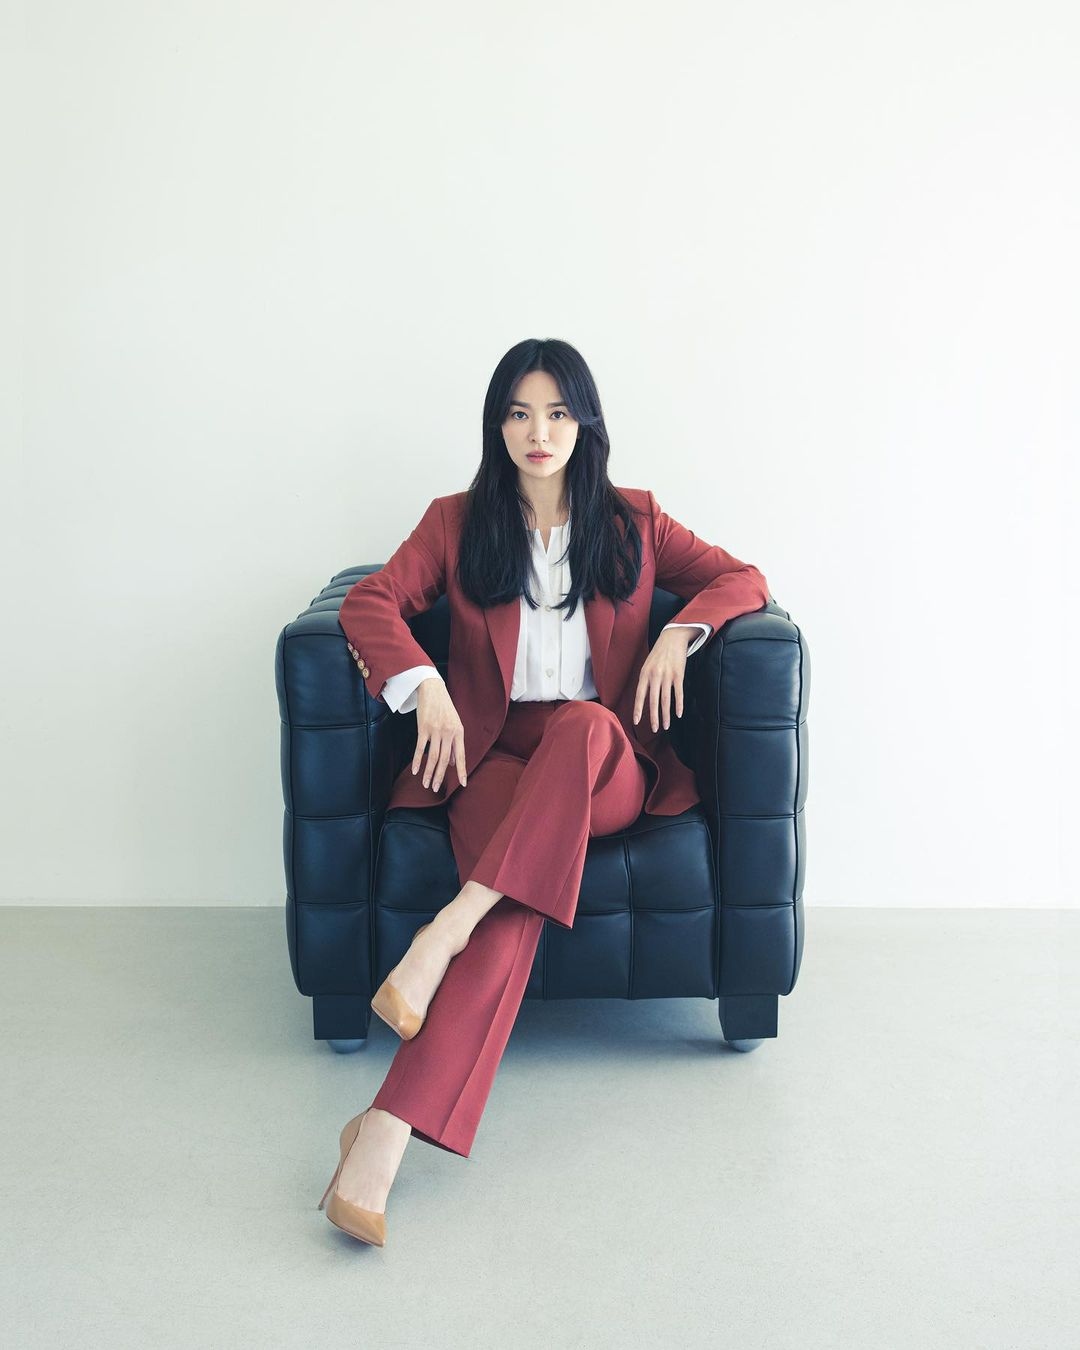 Ngắm nhìn Song Hye Kyo thanh lịch với trang phục công sở